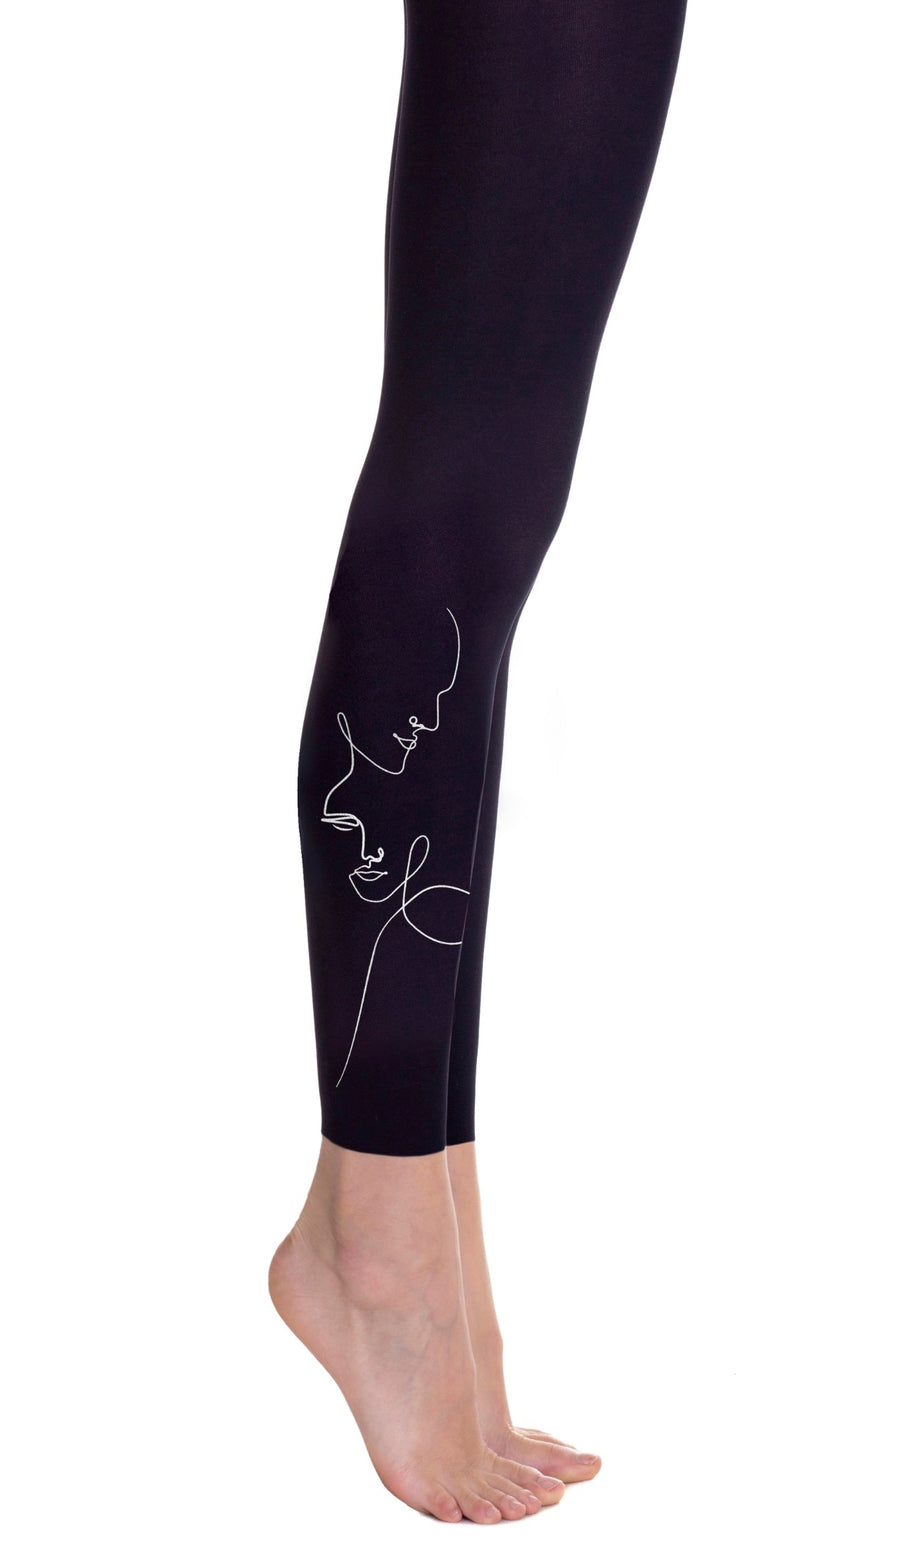 גרביון בצבע שחור ללא כף רגל עם הדפס שרבוט פנים